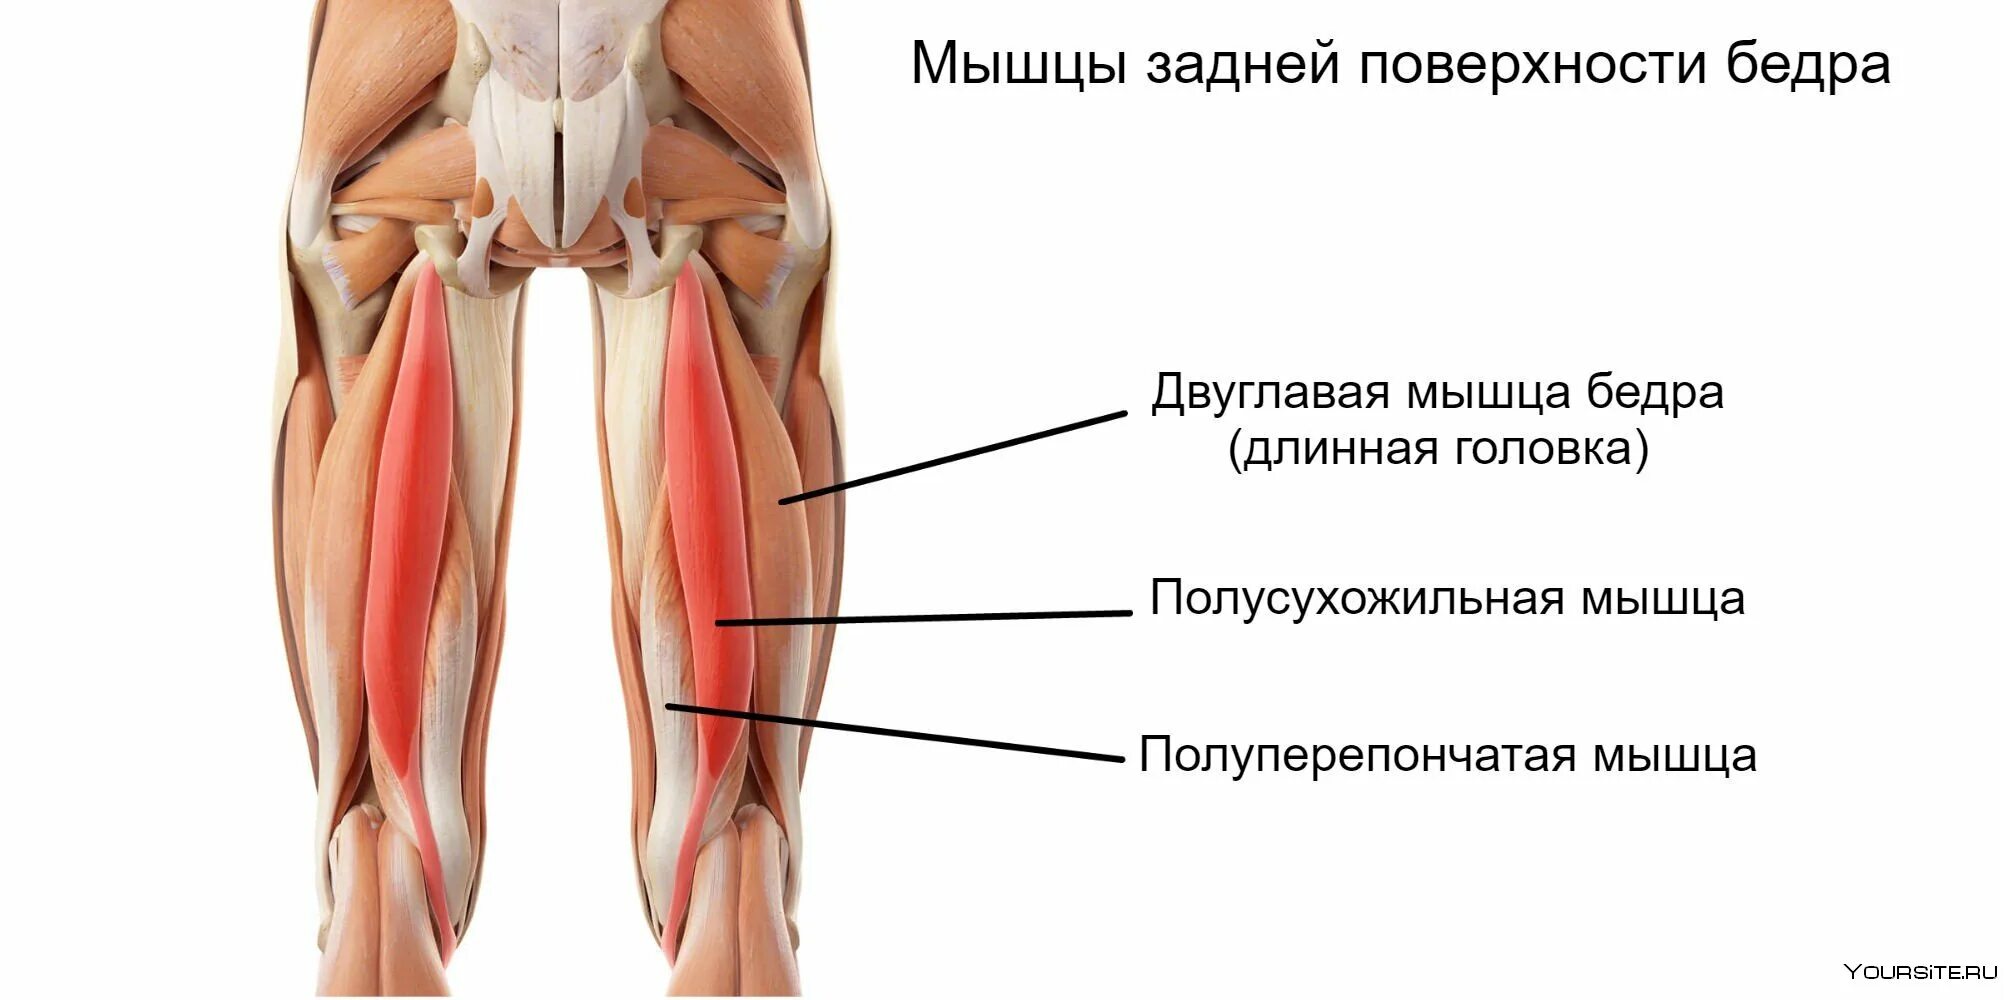 Сухожилие бедро задняя. Задняя группа полусухожильная мышца бедра. Мышцы задней части бедра анатомия. Длинная головка двуглавой мышцы бедра. Двуглавая мышца бедра крепление и функции.